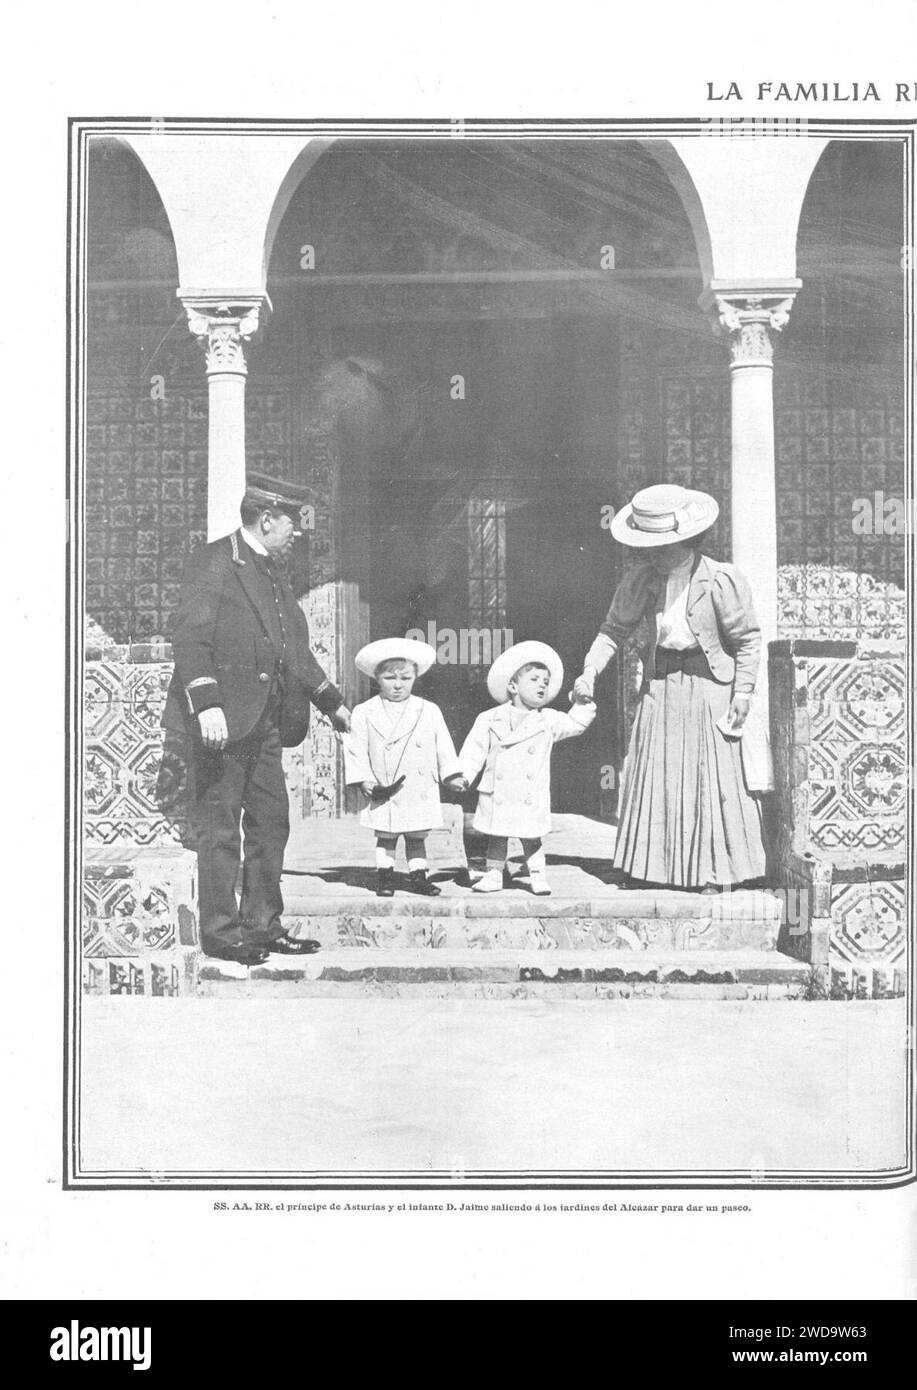 1910-03-10, Actualidades, La familia real en Sevilla, El Príncipe de Asturias y el infante Jaime saliendo a los jardines del Alcázar para dar un paseo, Barrera. Foto de stock